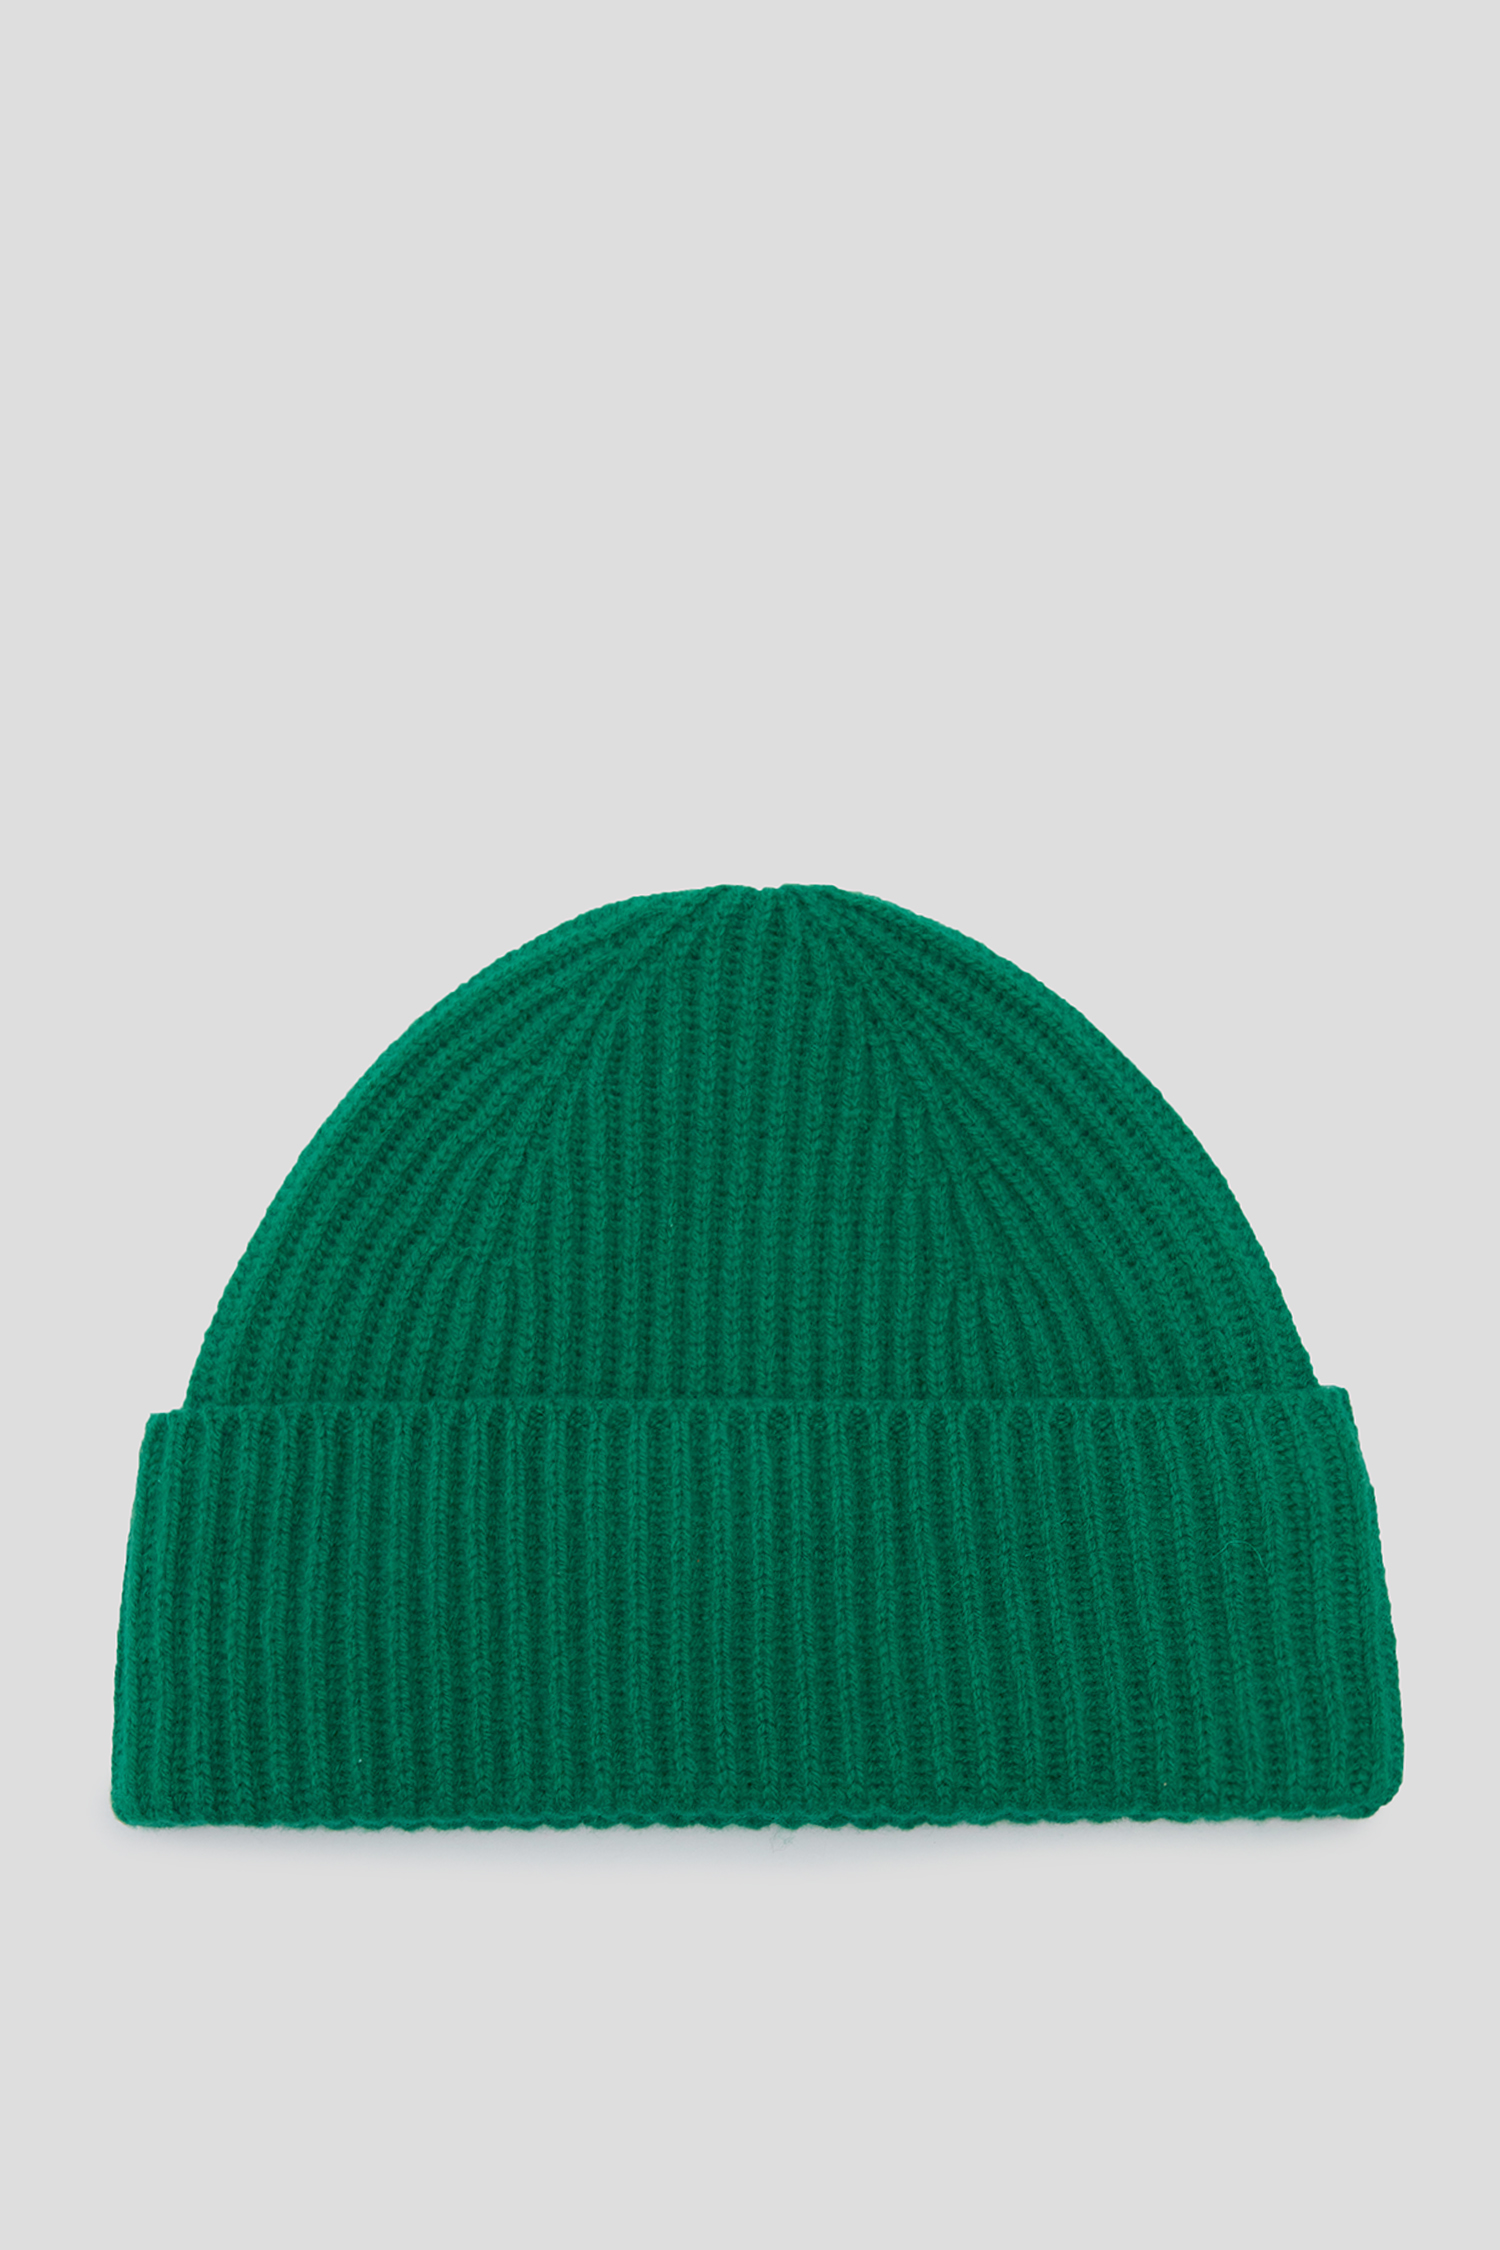 Женская зеленая шерстяная шапка 1